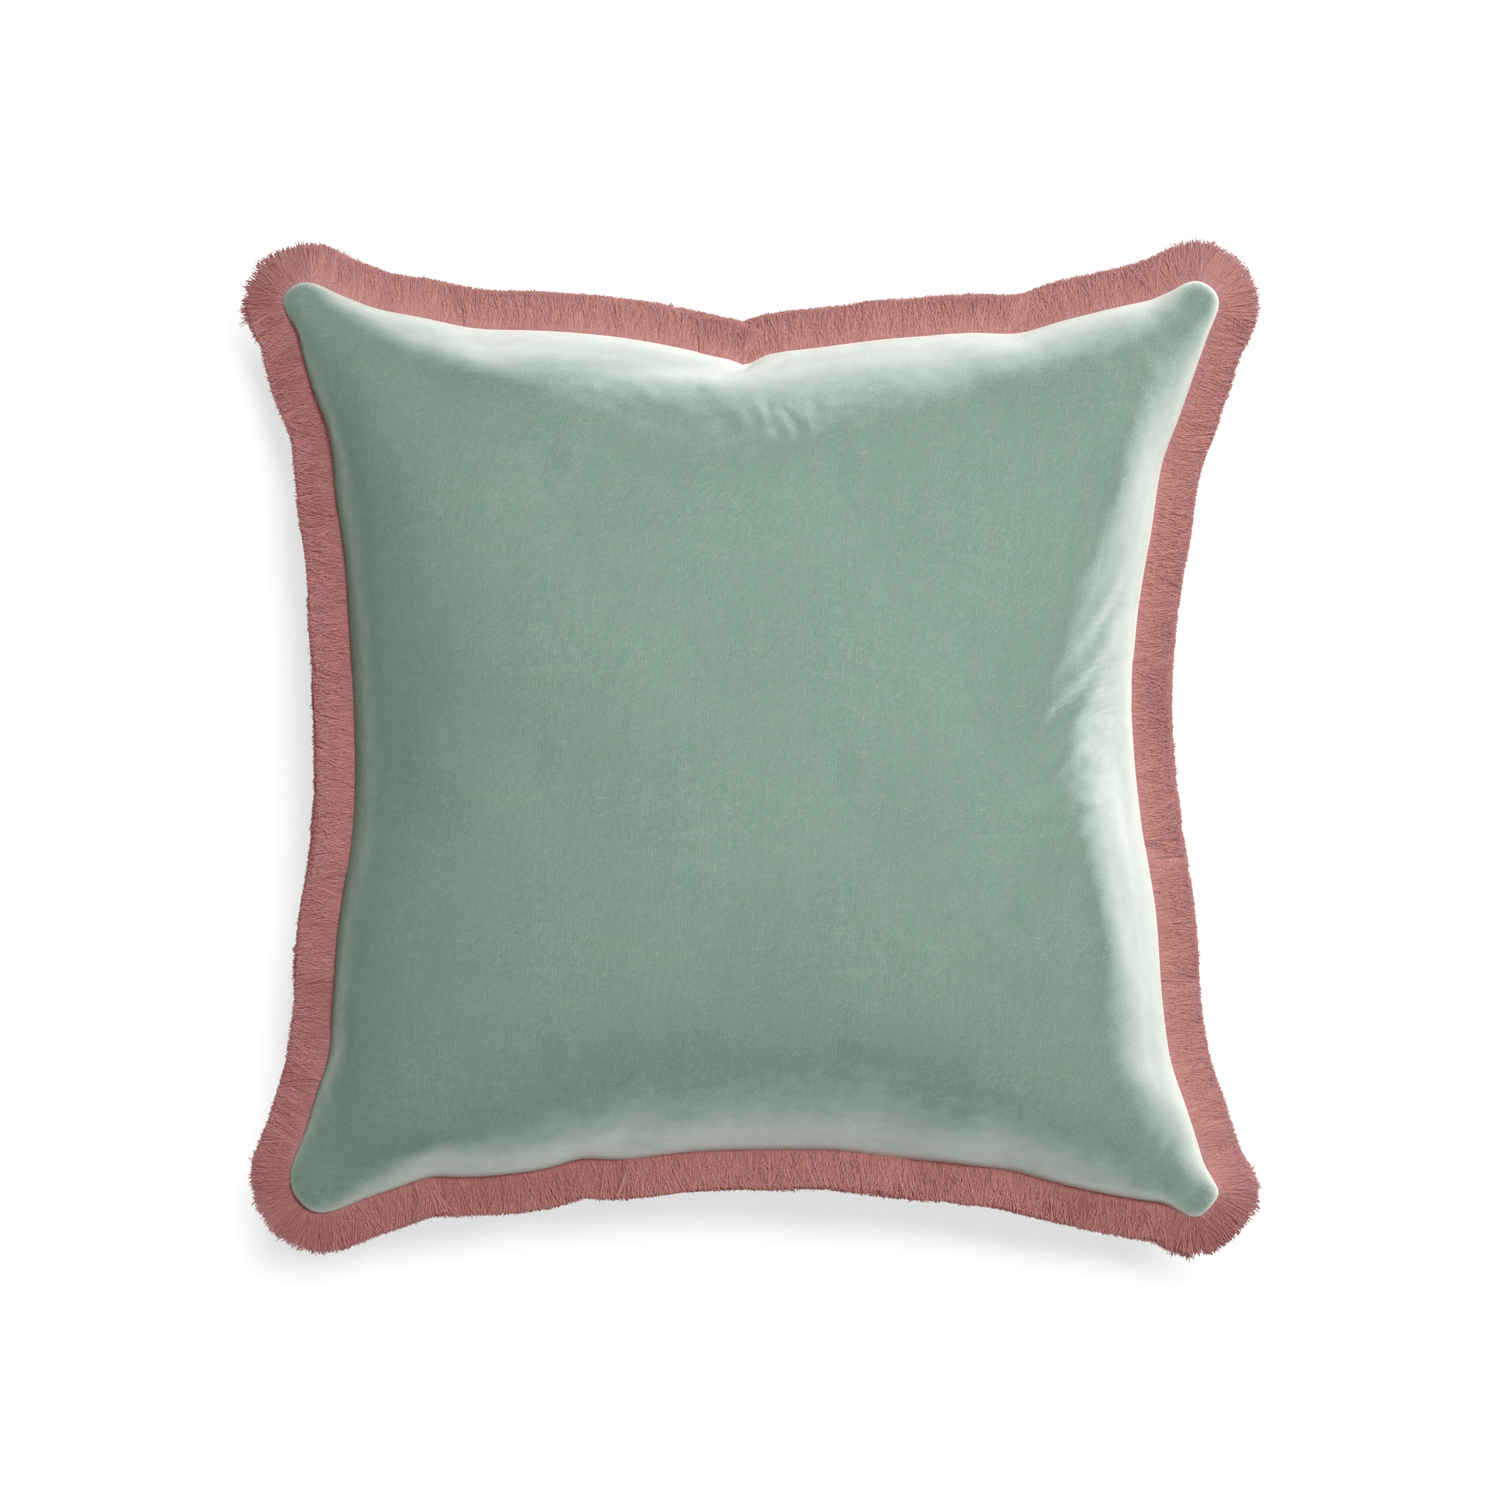 square blue green velvet pillow with dusty rose fringe